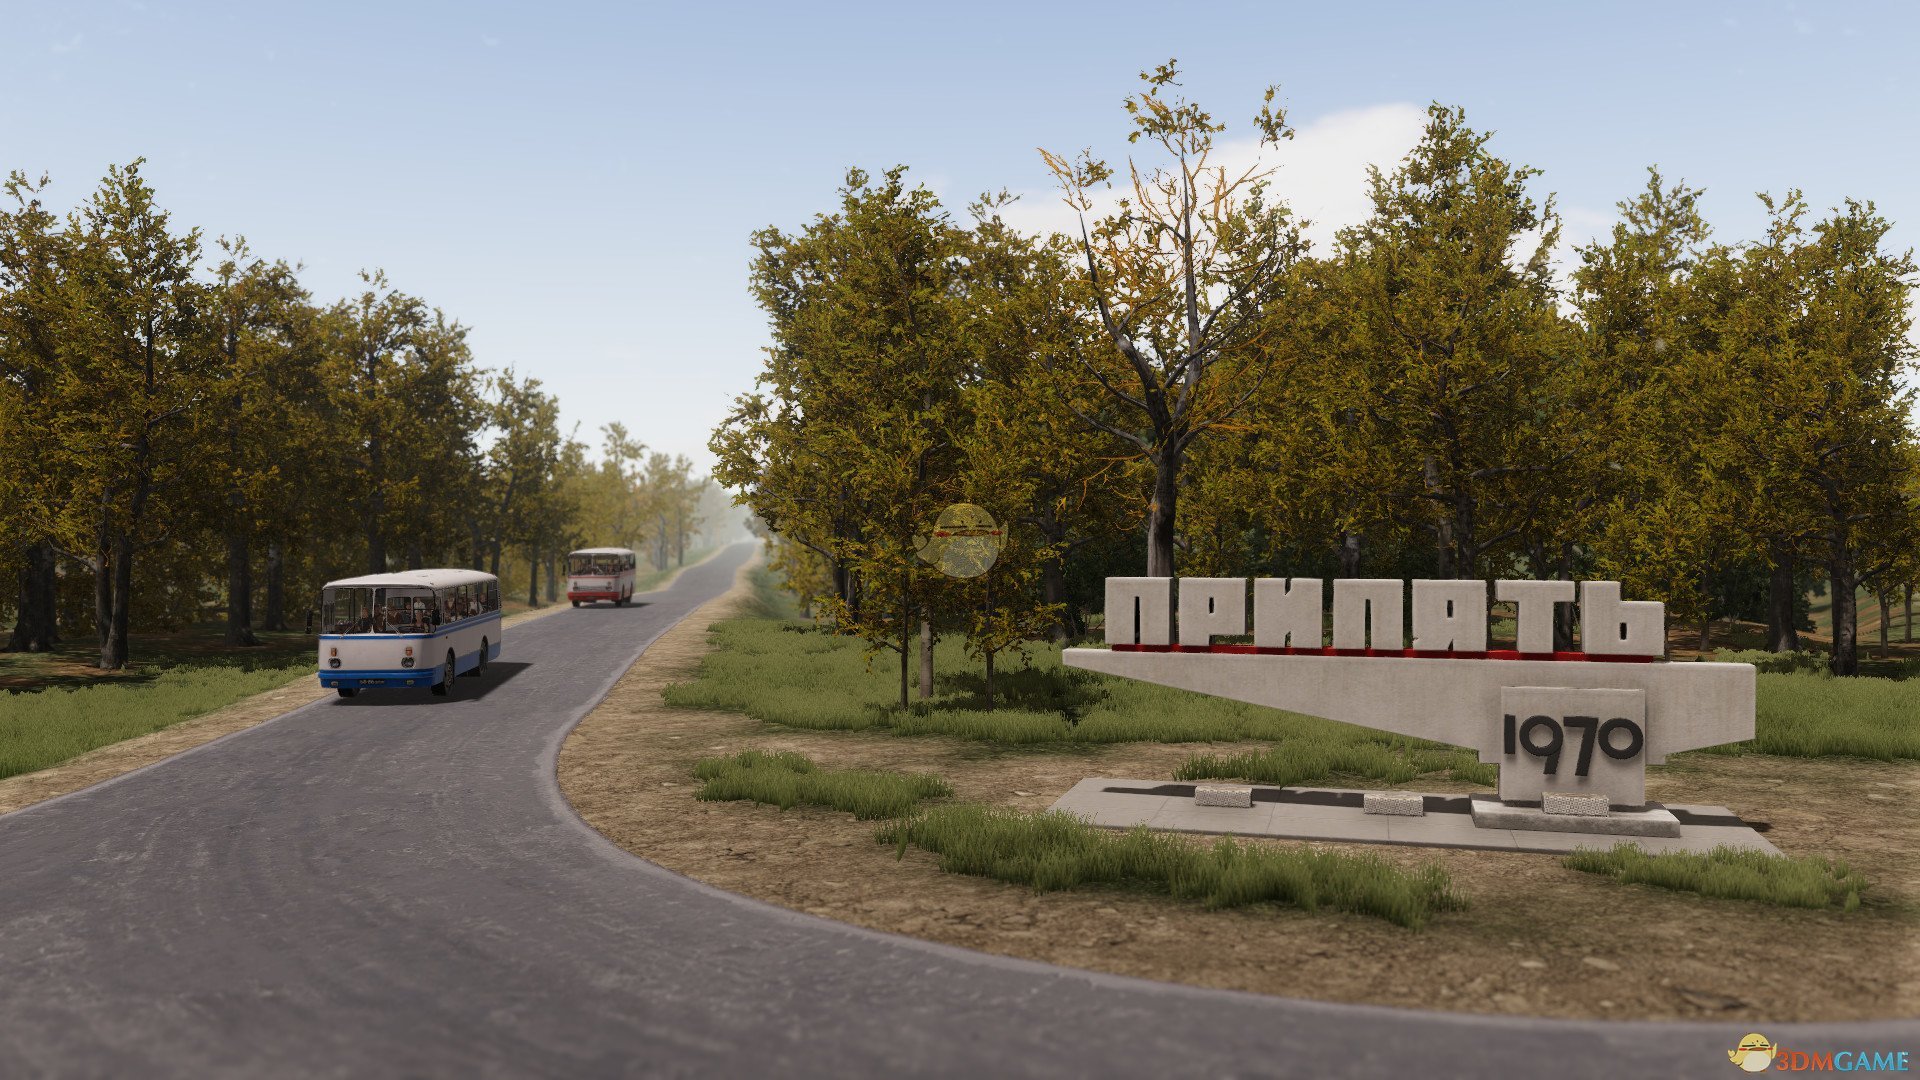 《巴士世界》游戏特色内容一览